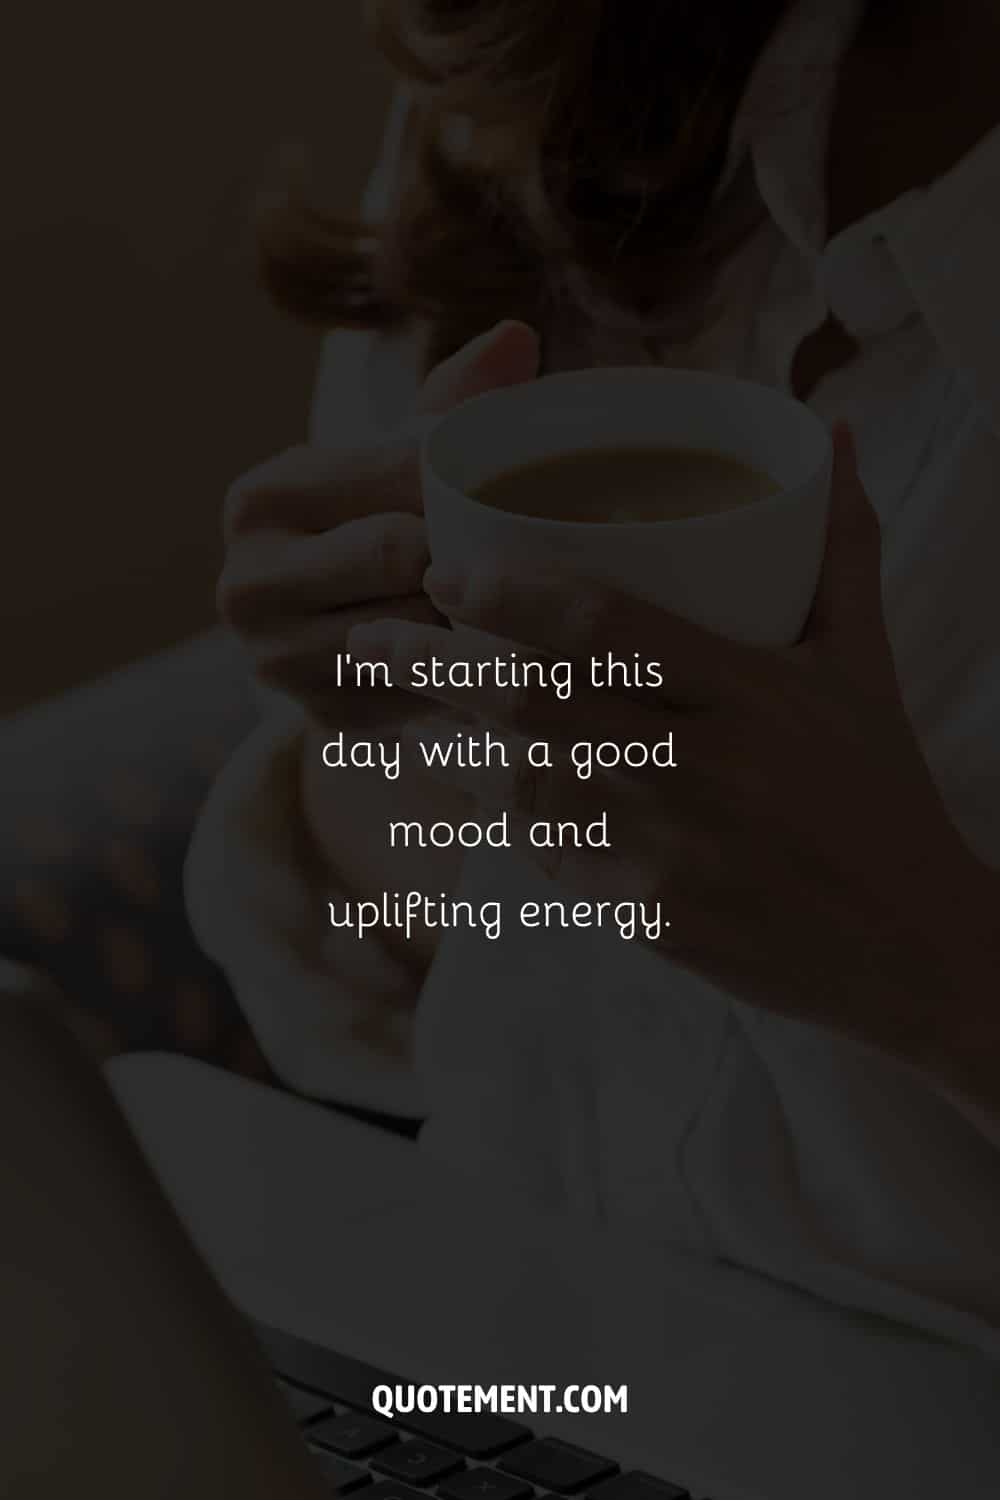 Imagen de una mujer sosteniendo una taza de café que representa una afirmación del martes por la mañana.